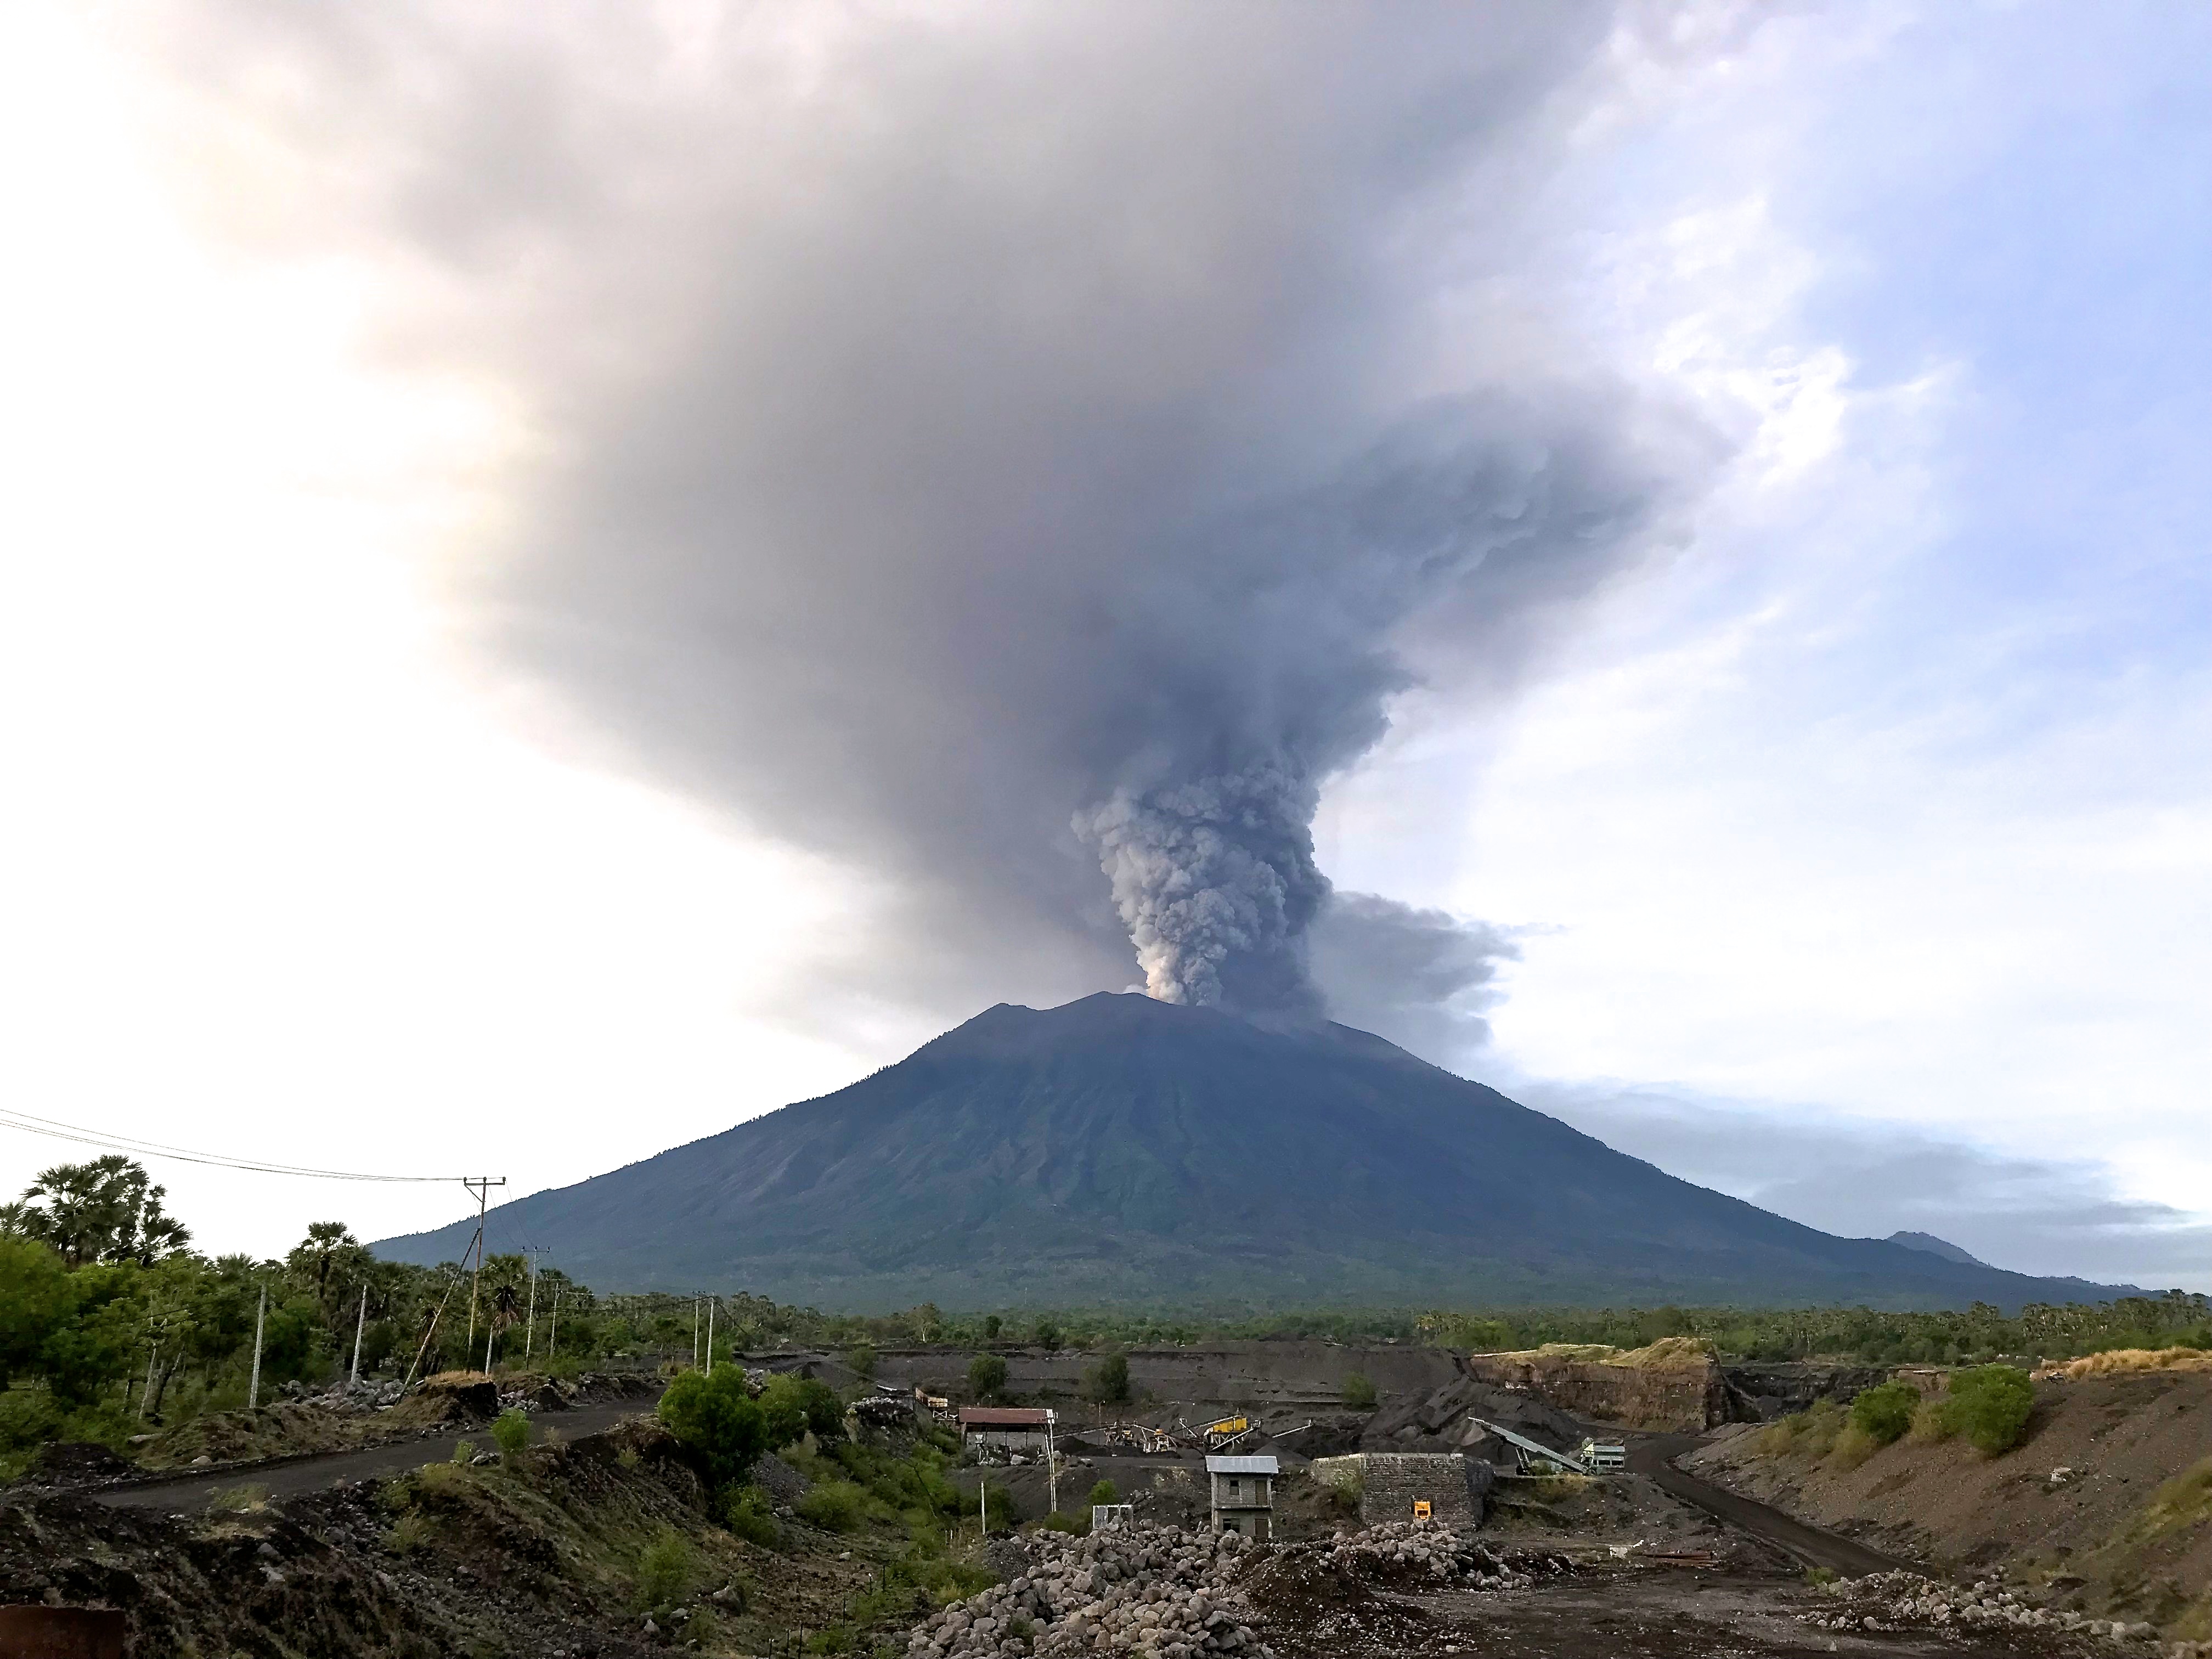 Drone technology helps improve understanding of volcanoes 